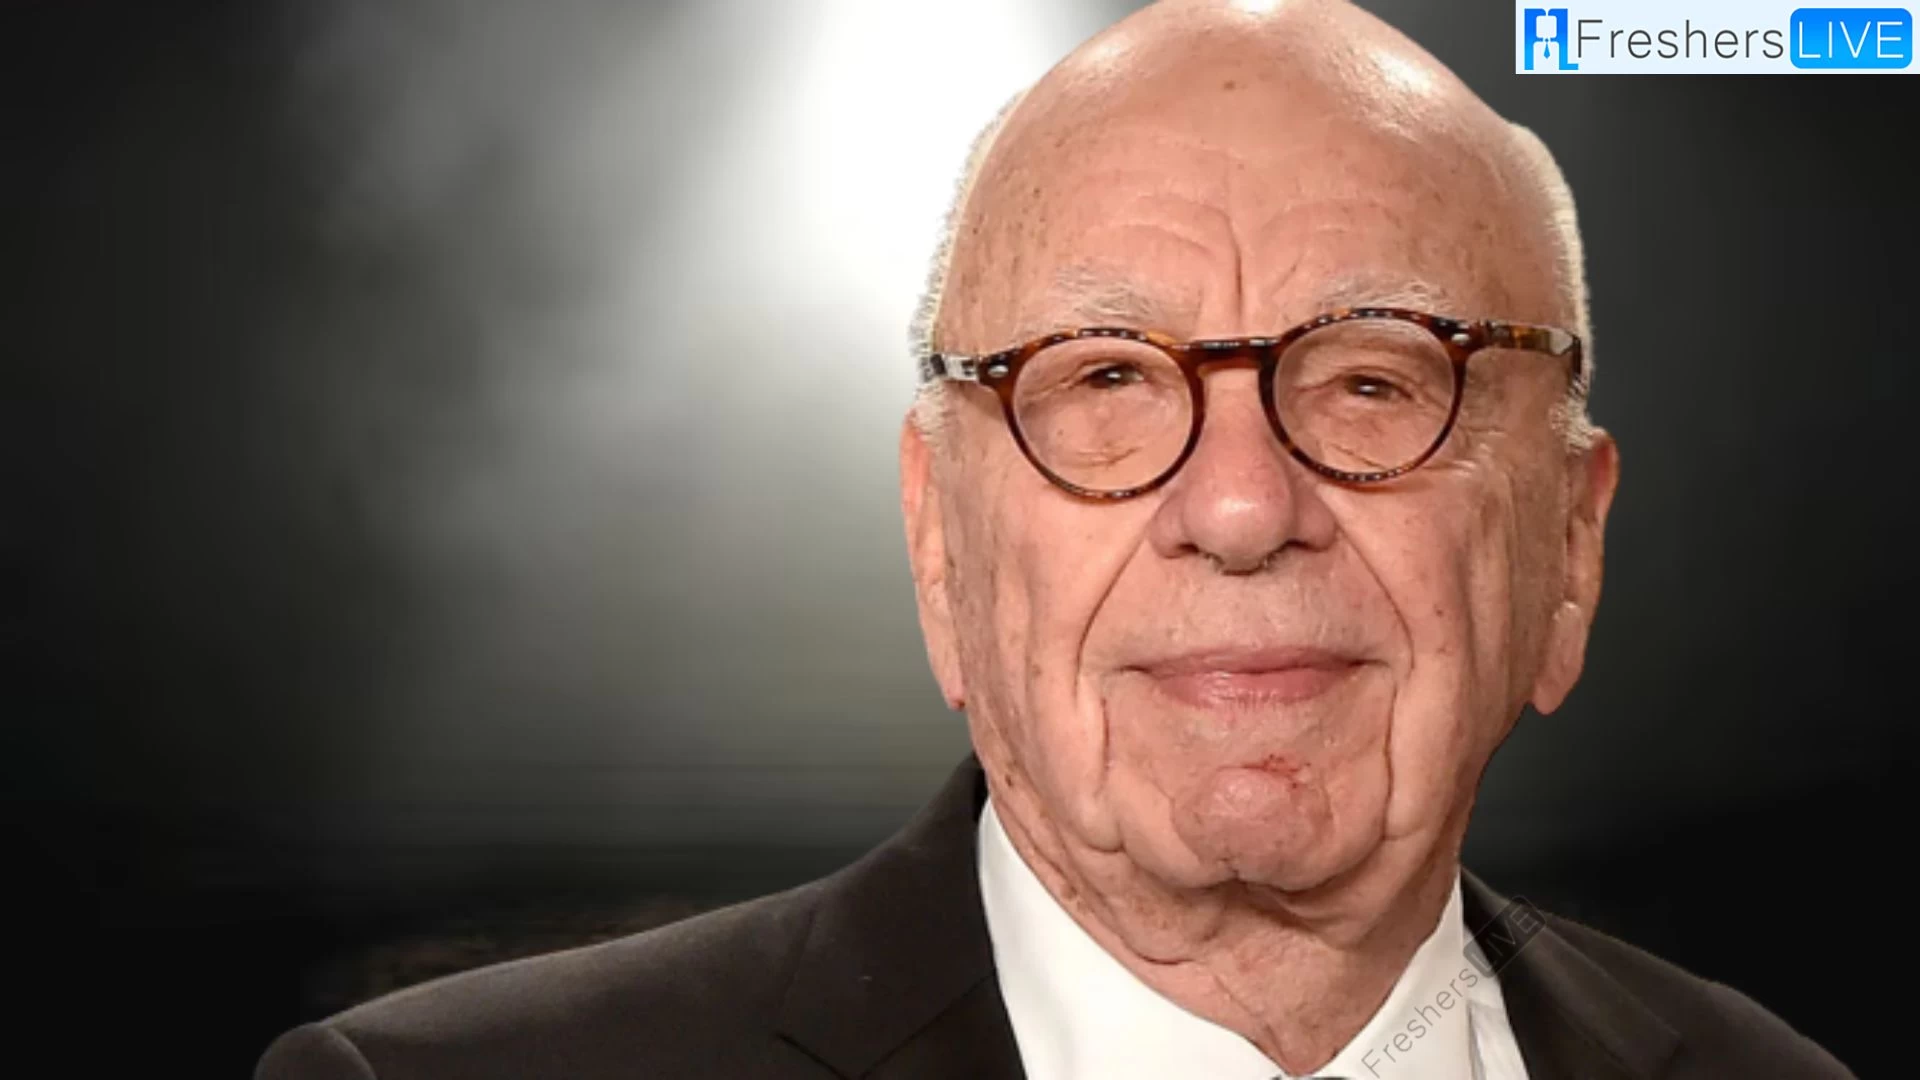 Does Rupert Murdoch Have Kids? Who is Rupert Murdoch? Rupert Murdoch's Age, Family, Parents and More